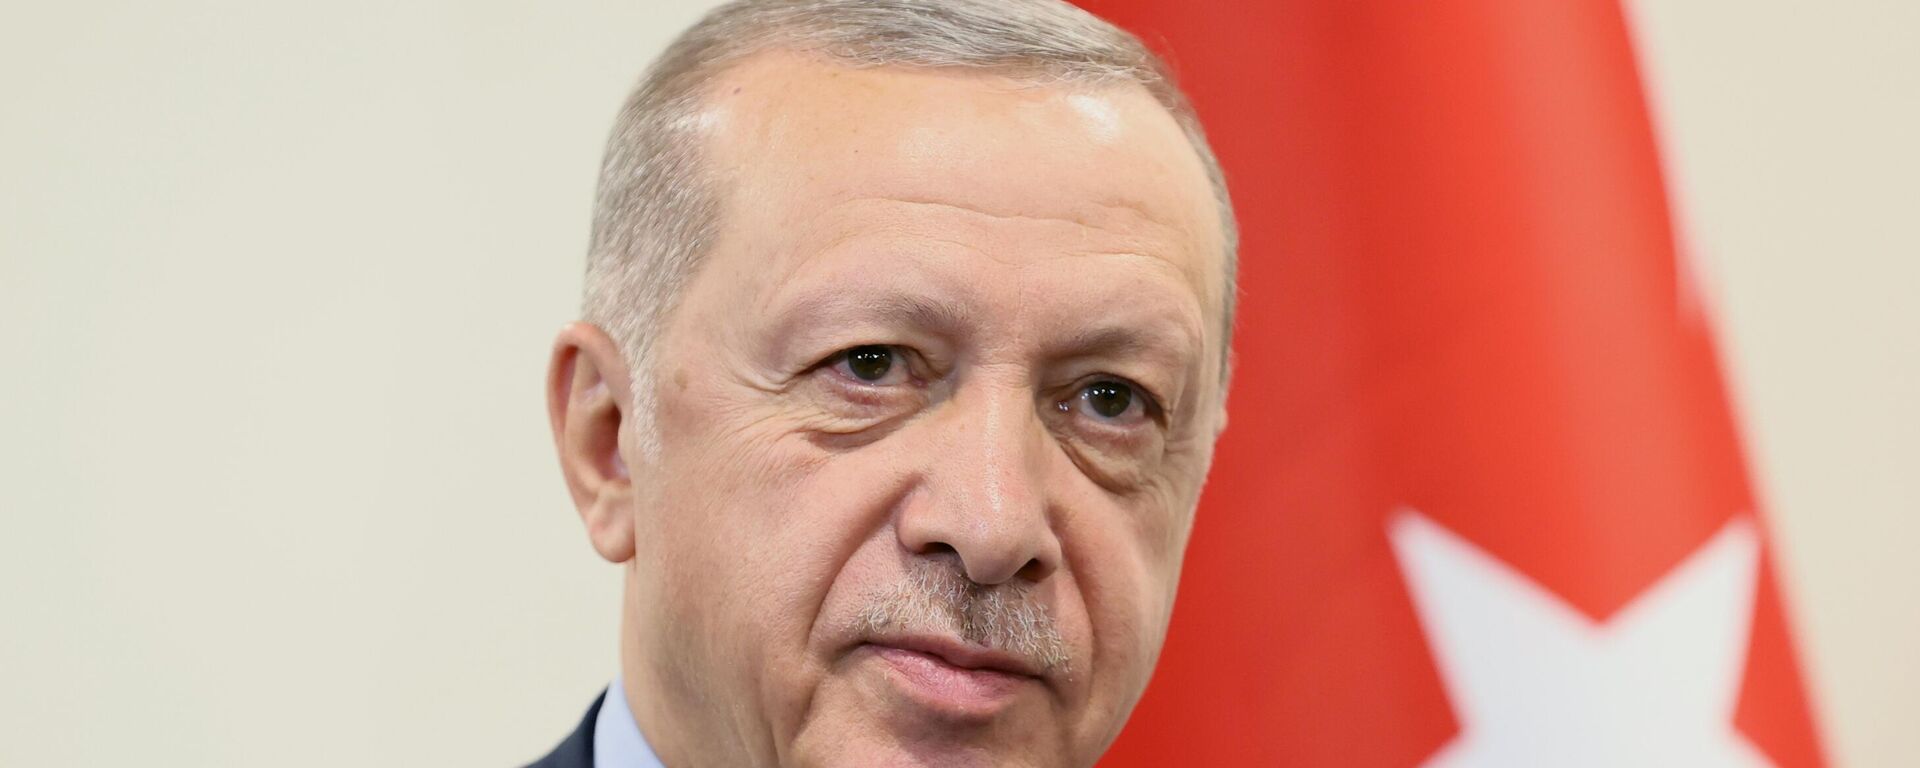 El presidente de Turquía, Recep Tayyip Erdogan - Sputnik Mundo, 1920, 02.09.2022